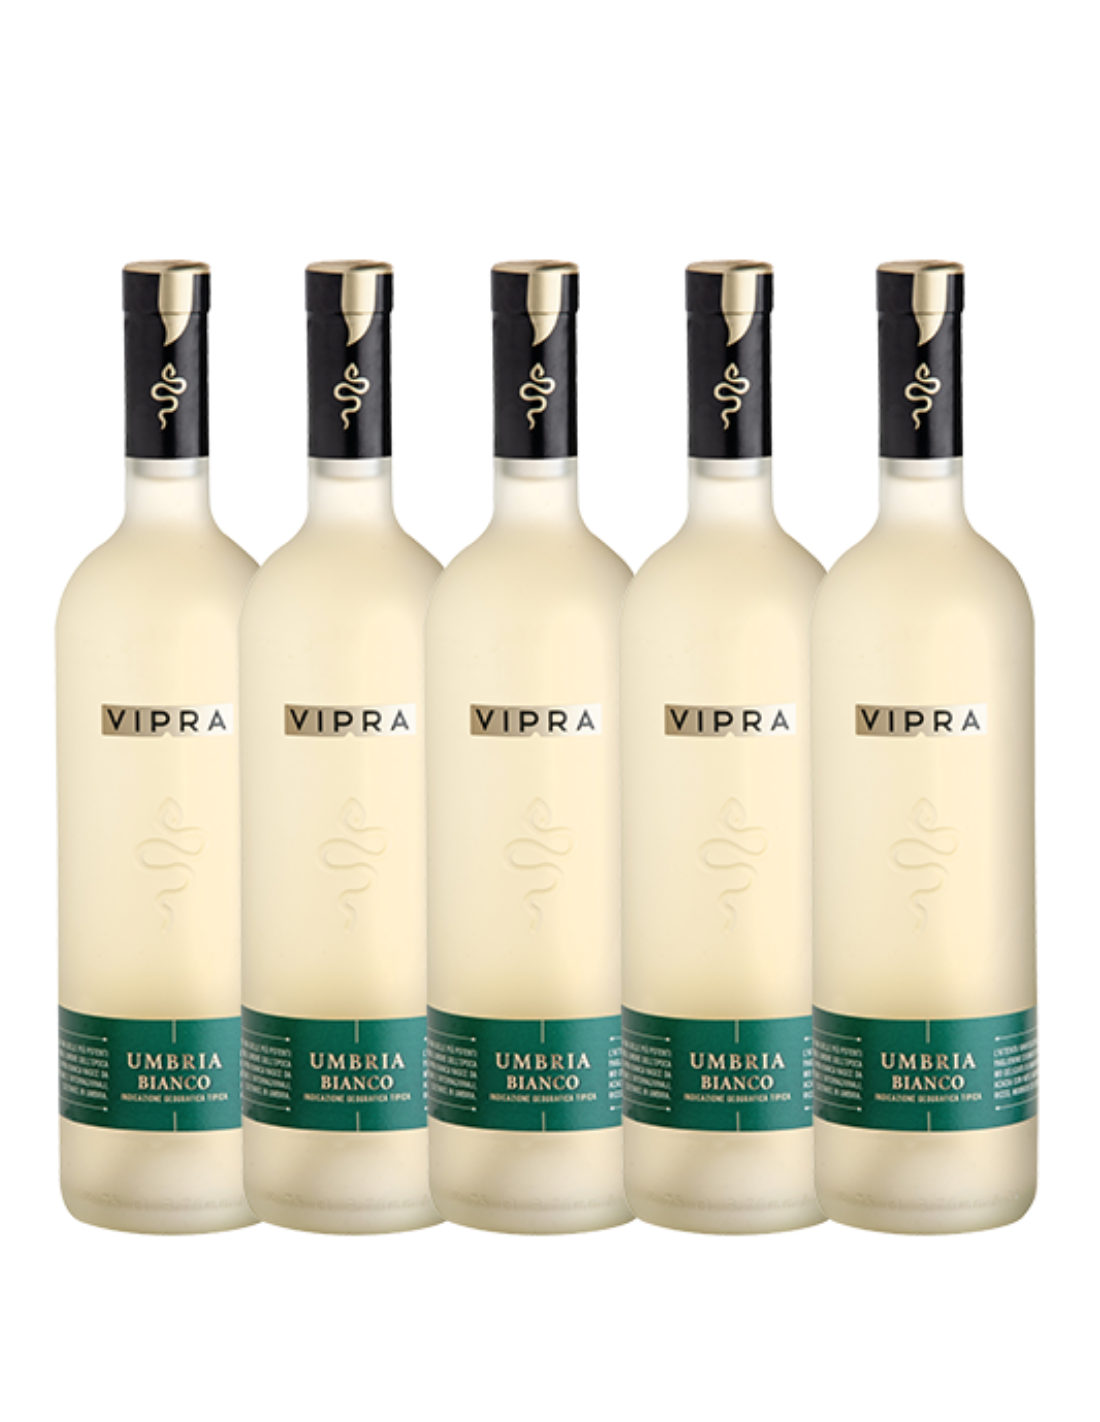 Pachet 5 sticle Vin alb Vipra Bianca Bigi Umbria, 0.75L, Italia alcooldiscount.ro